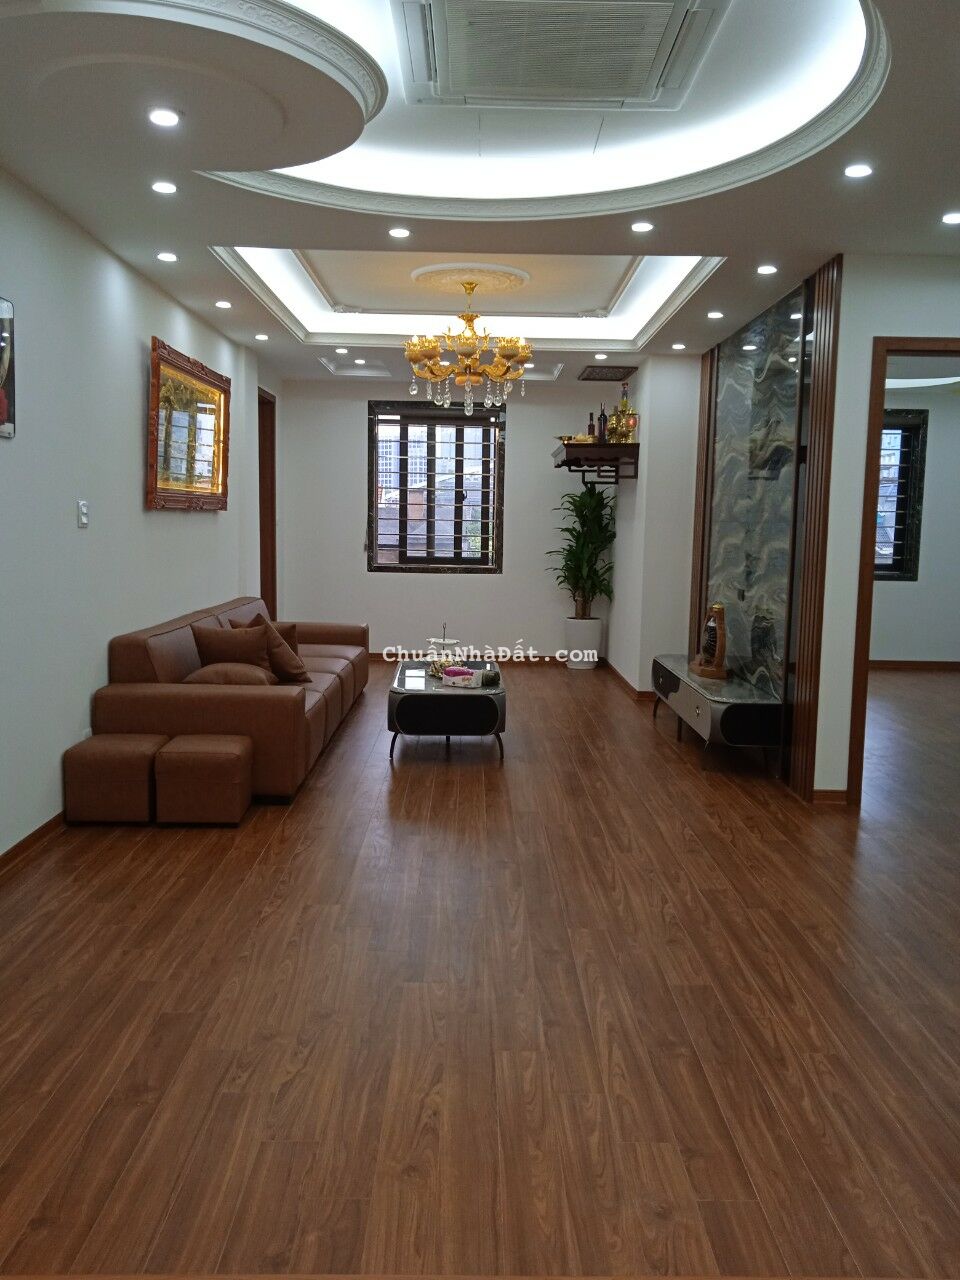 Bán căn hộ chung cư 137 Nguyễn Ngọc Vũ 125m2 3PN 2WC giá 5.* tỷ nhà mới đẹp LH 0986128415